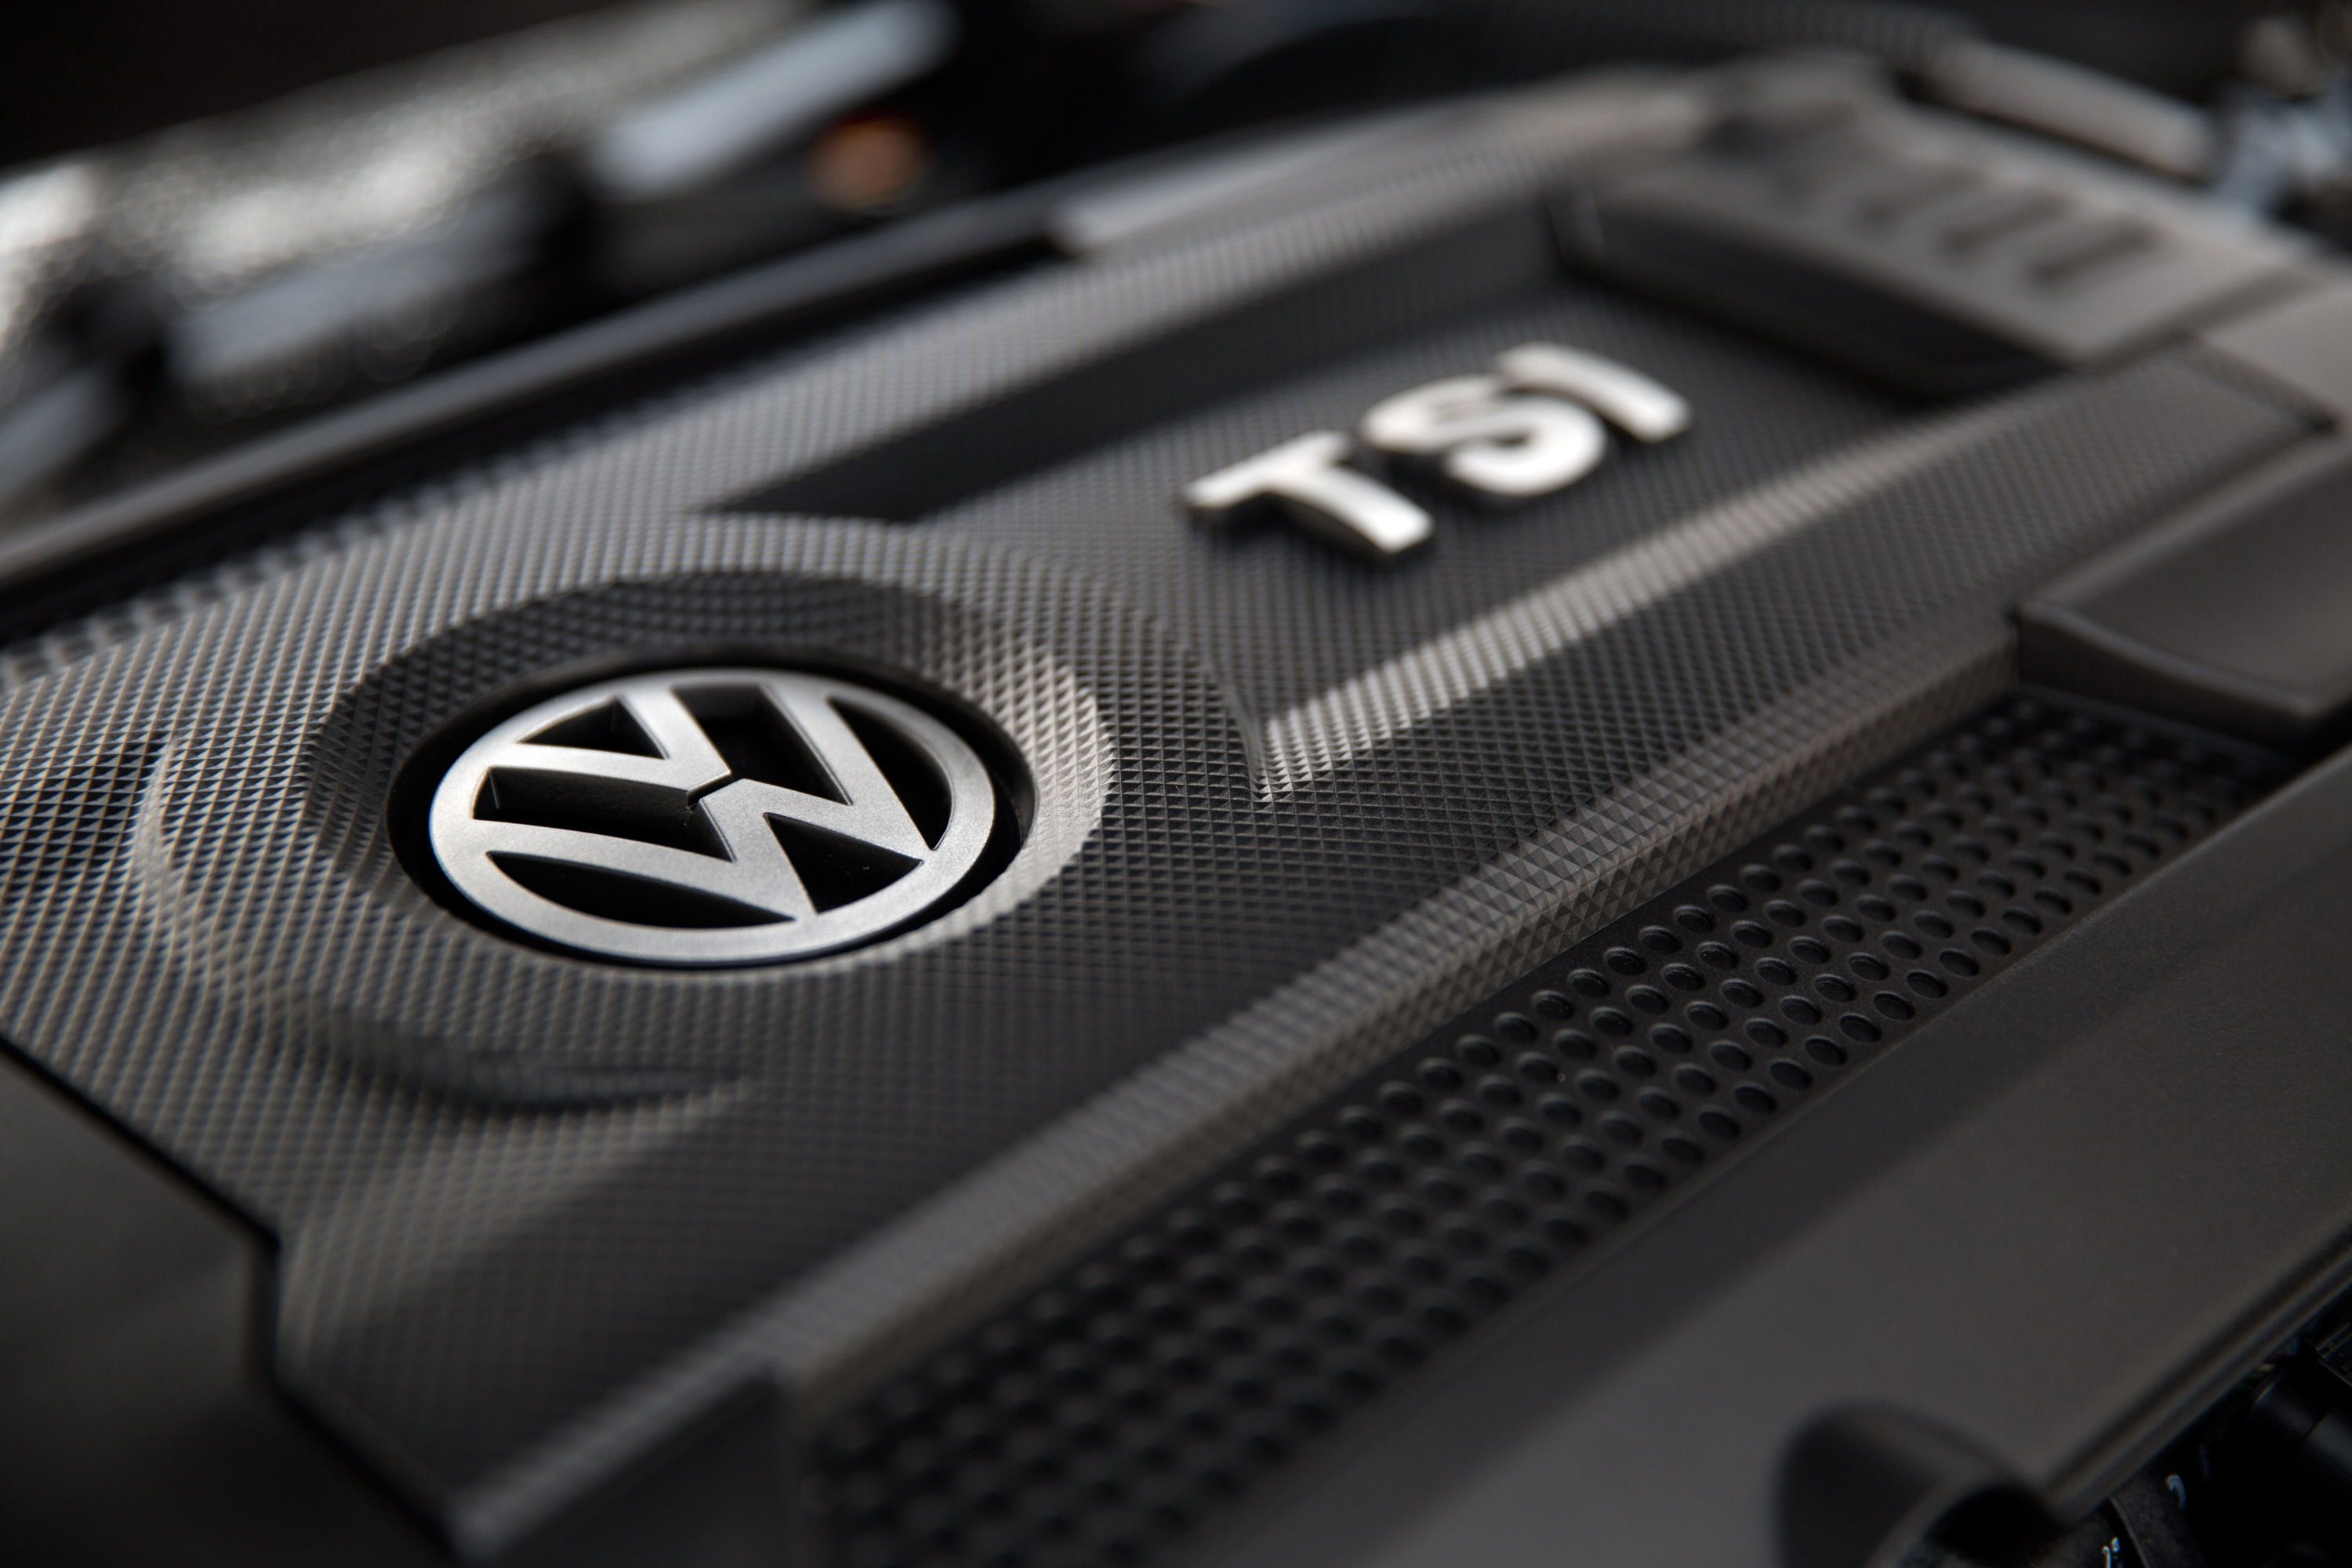 2015 Volkswagen Golf SportWagen